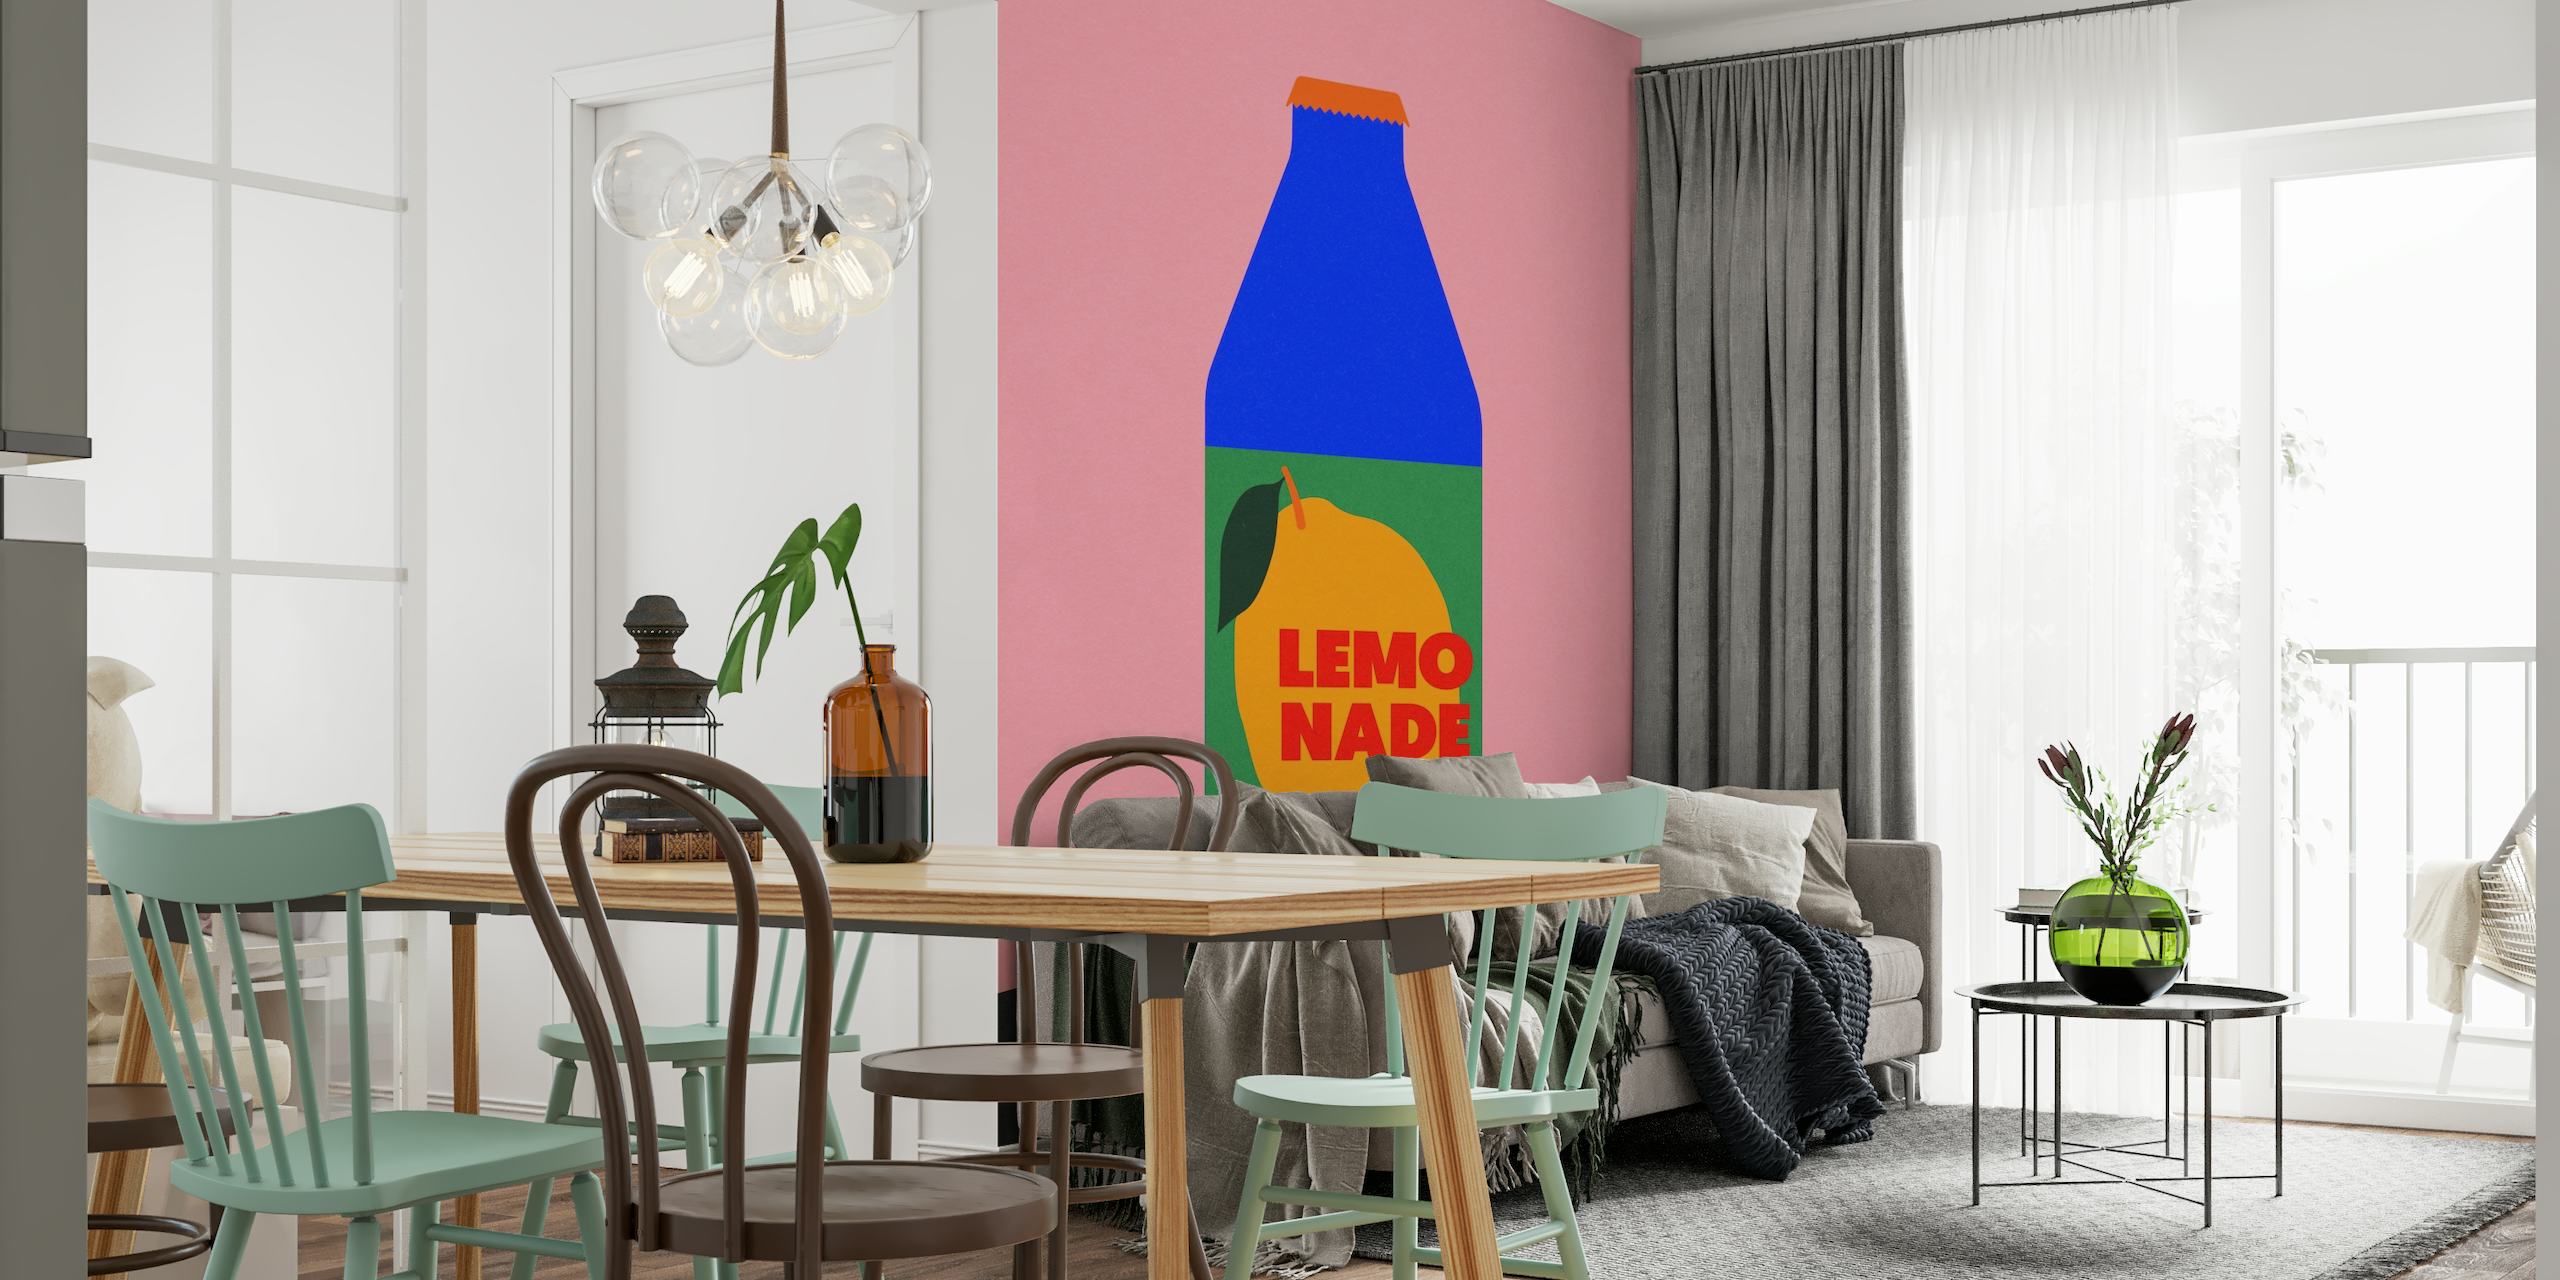 Moderno mural de pared 'Lemo Nade' con fondo rosa e ilustración de una botella azul